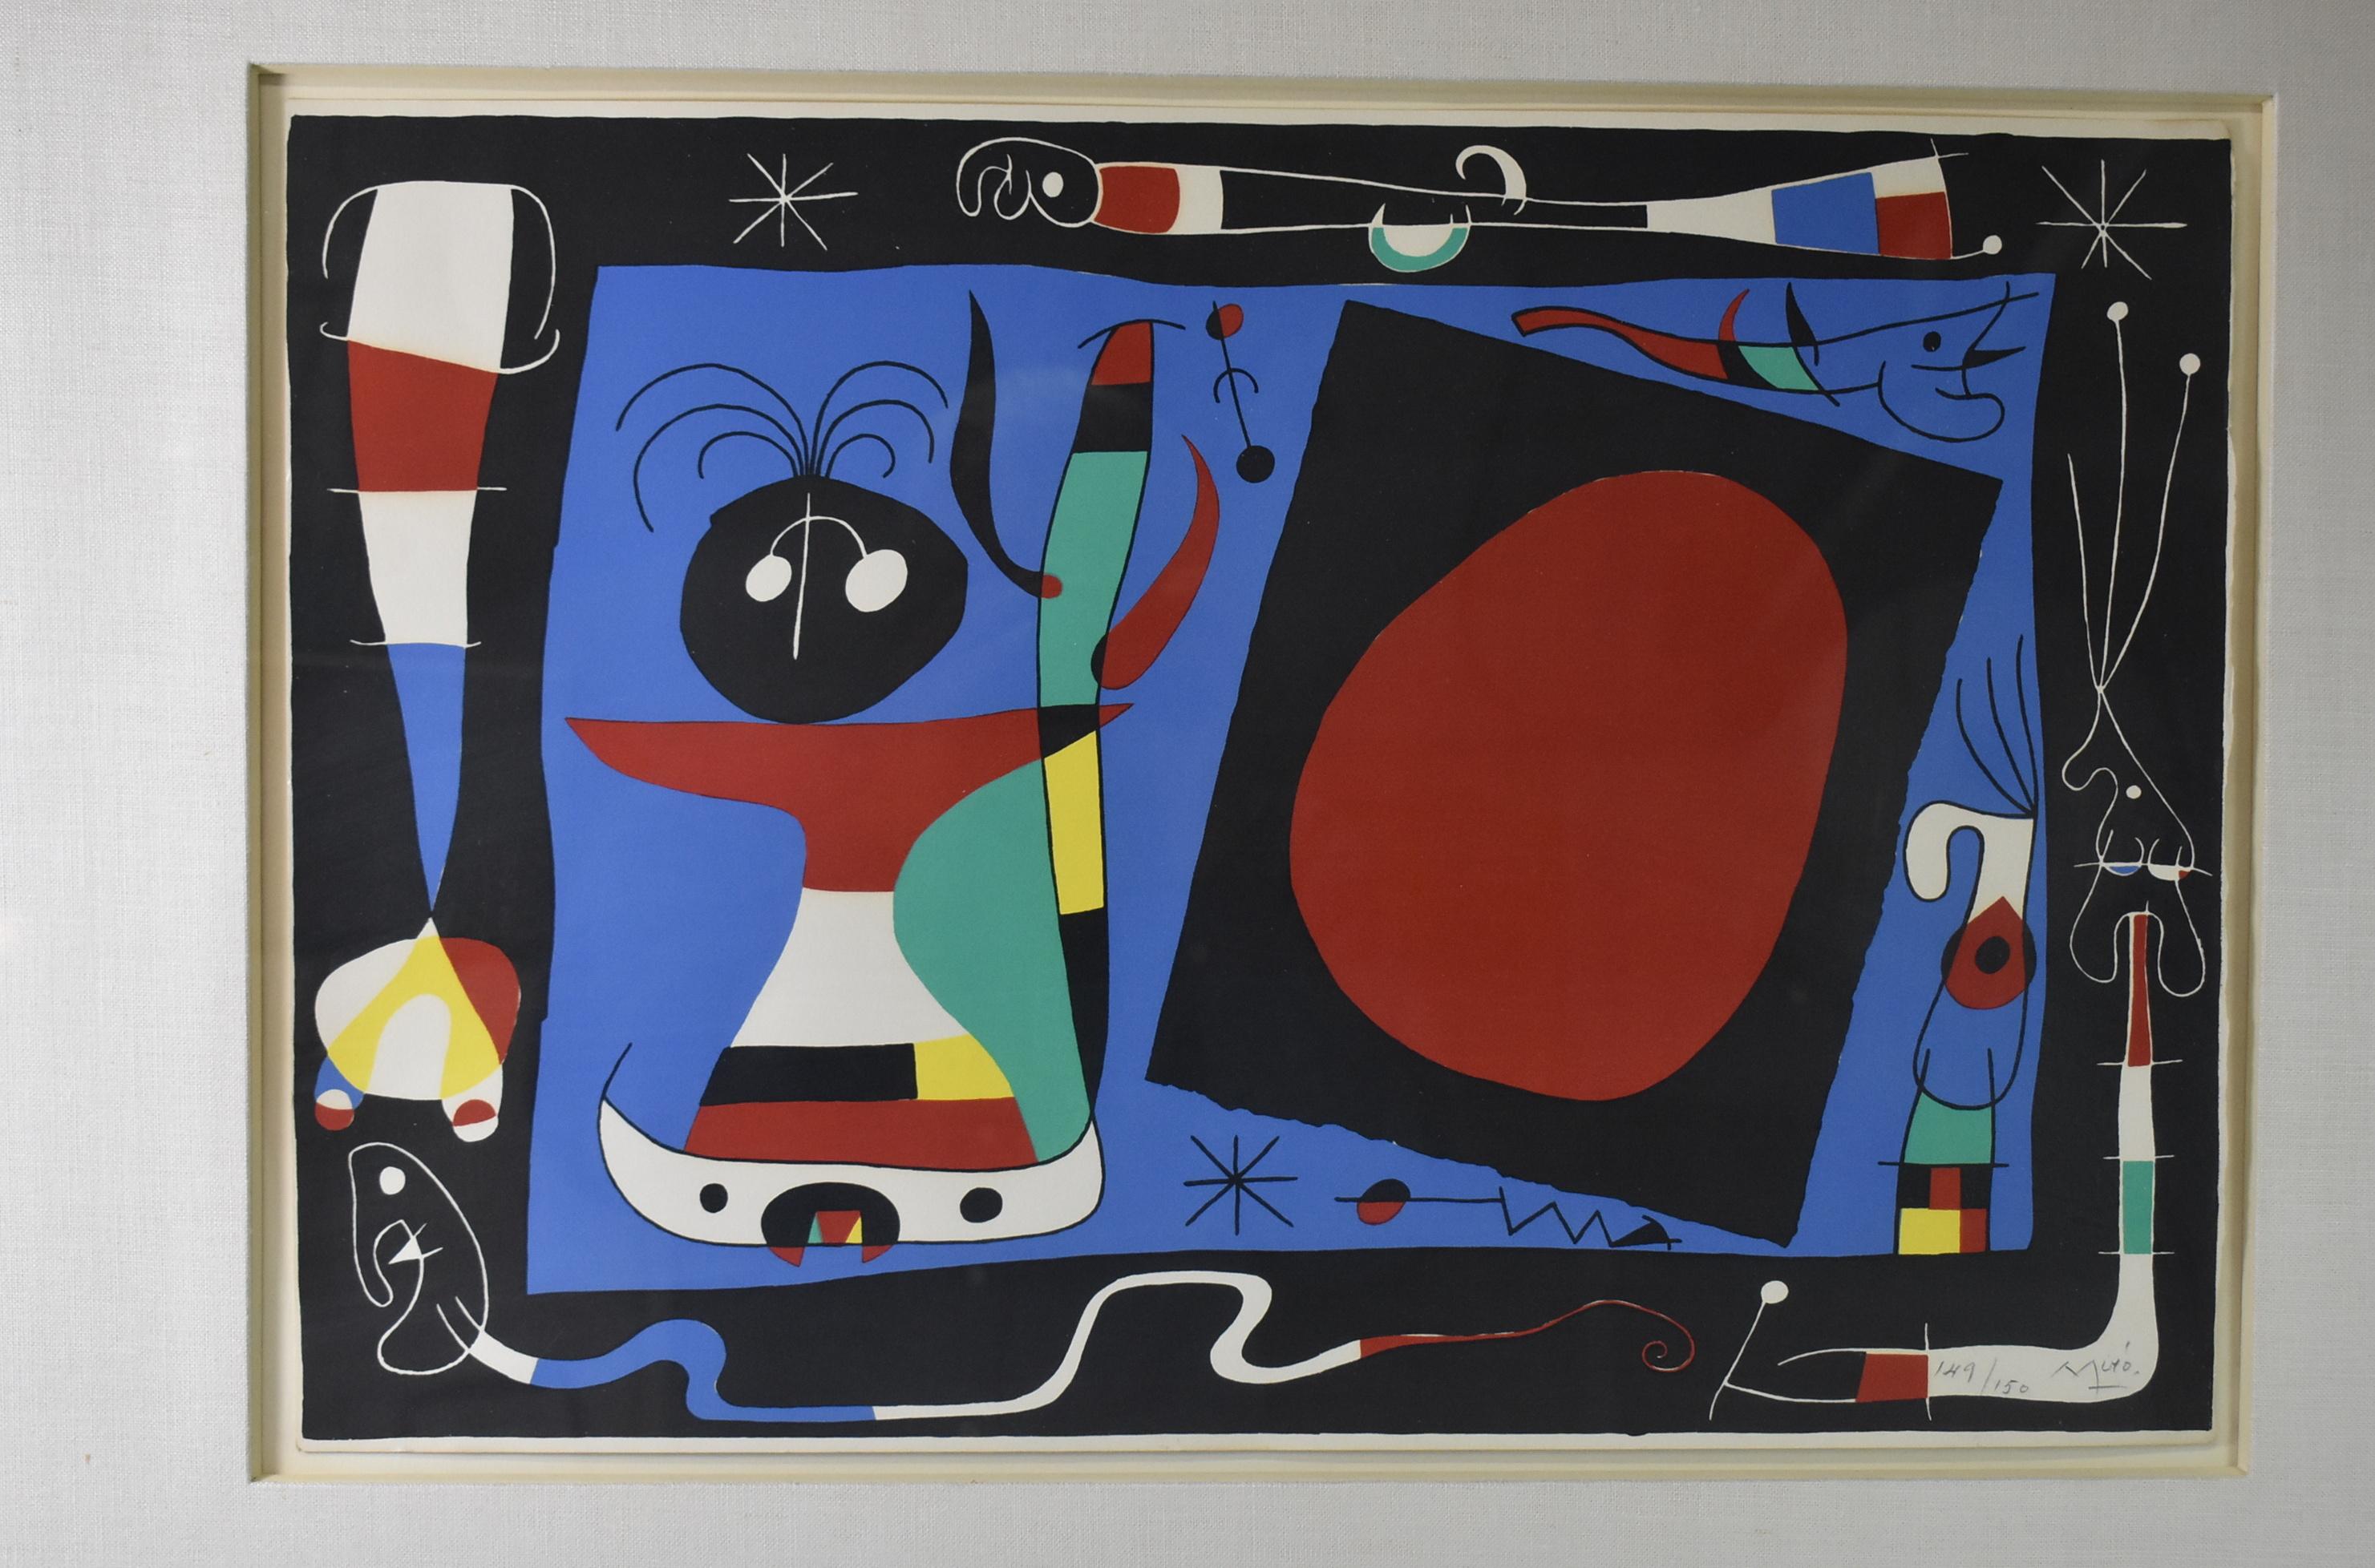 Il s'agit d'une magnifique lithographie en couleurs de l'un des grands maîtres du modernisme du XXe siècle, Joan Miró, qui présente une composition abstraite curviligne aux couleurs vives, si classique dans l'œuvre la plus appréciée de Miró. Joan